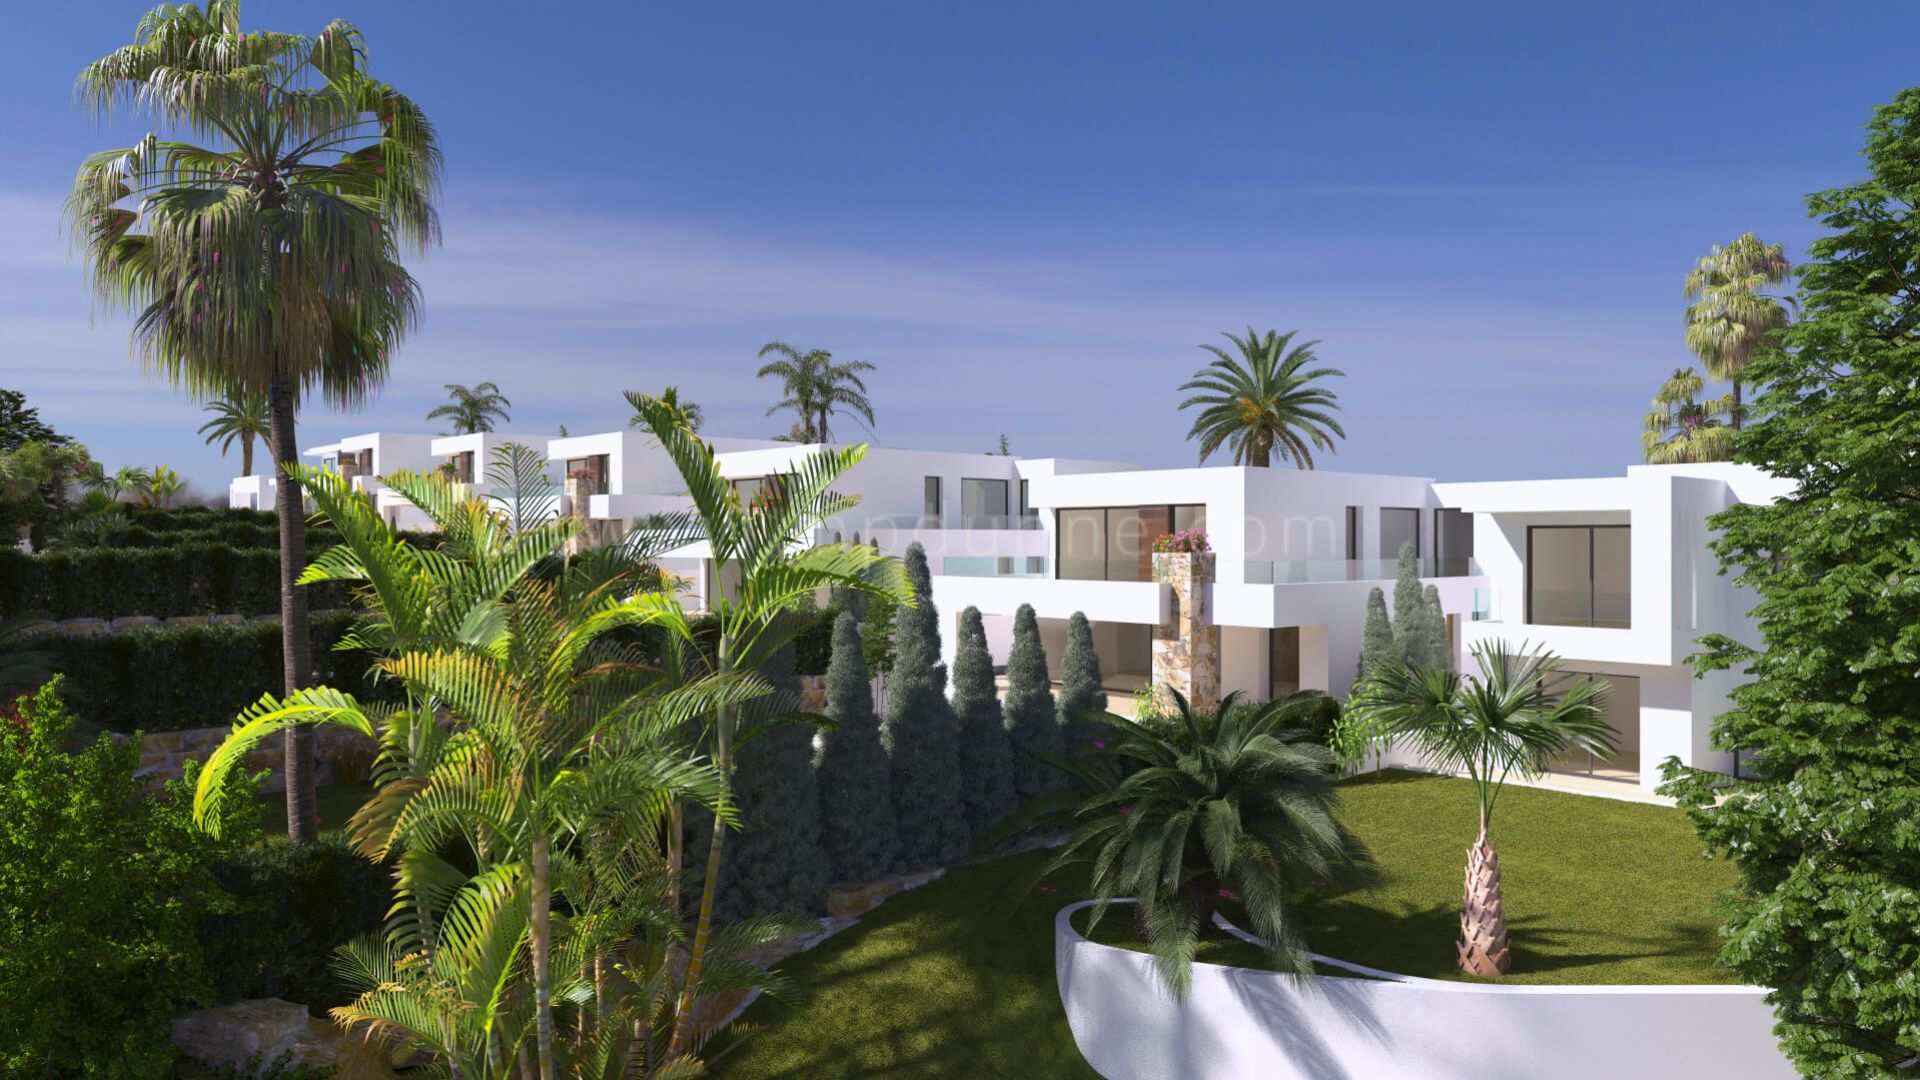 Neues Projekt mit modernen Villen an der Goldenen Meile von Marbella.